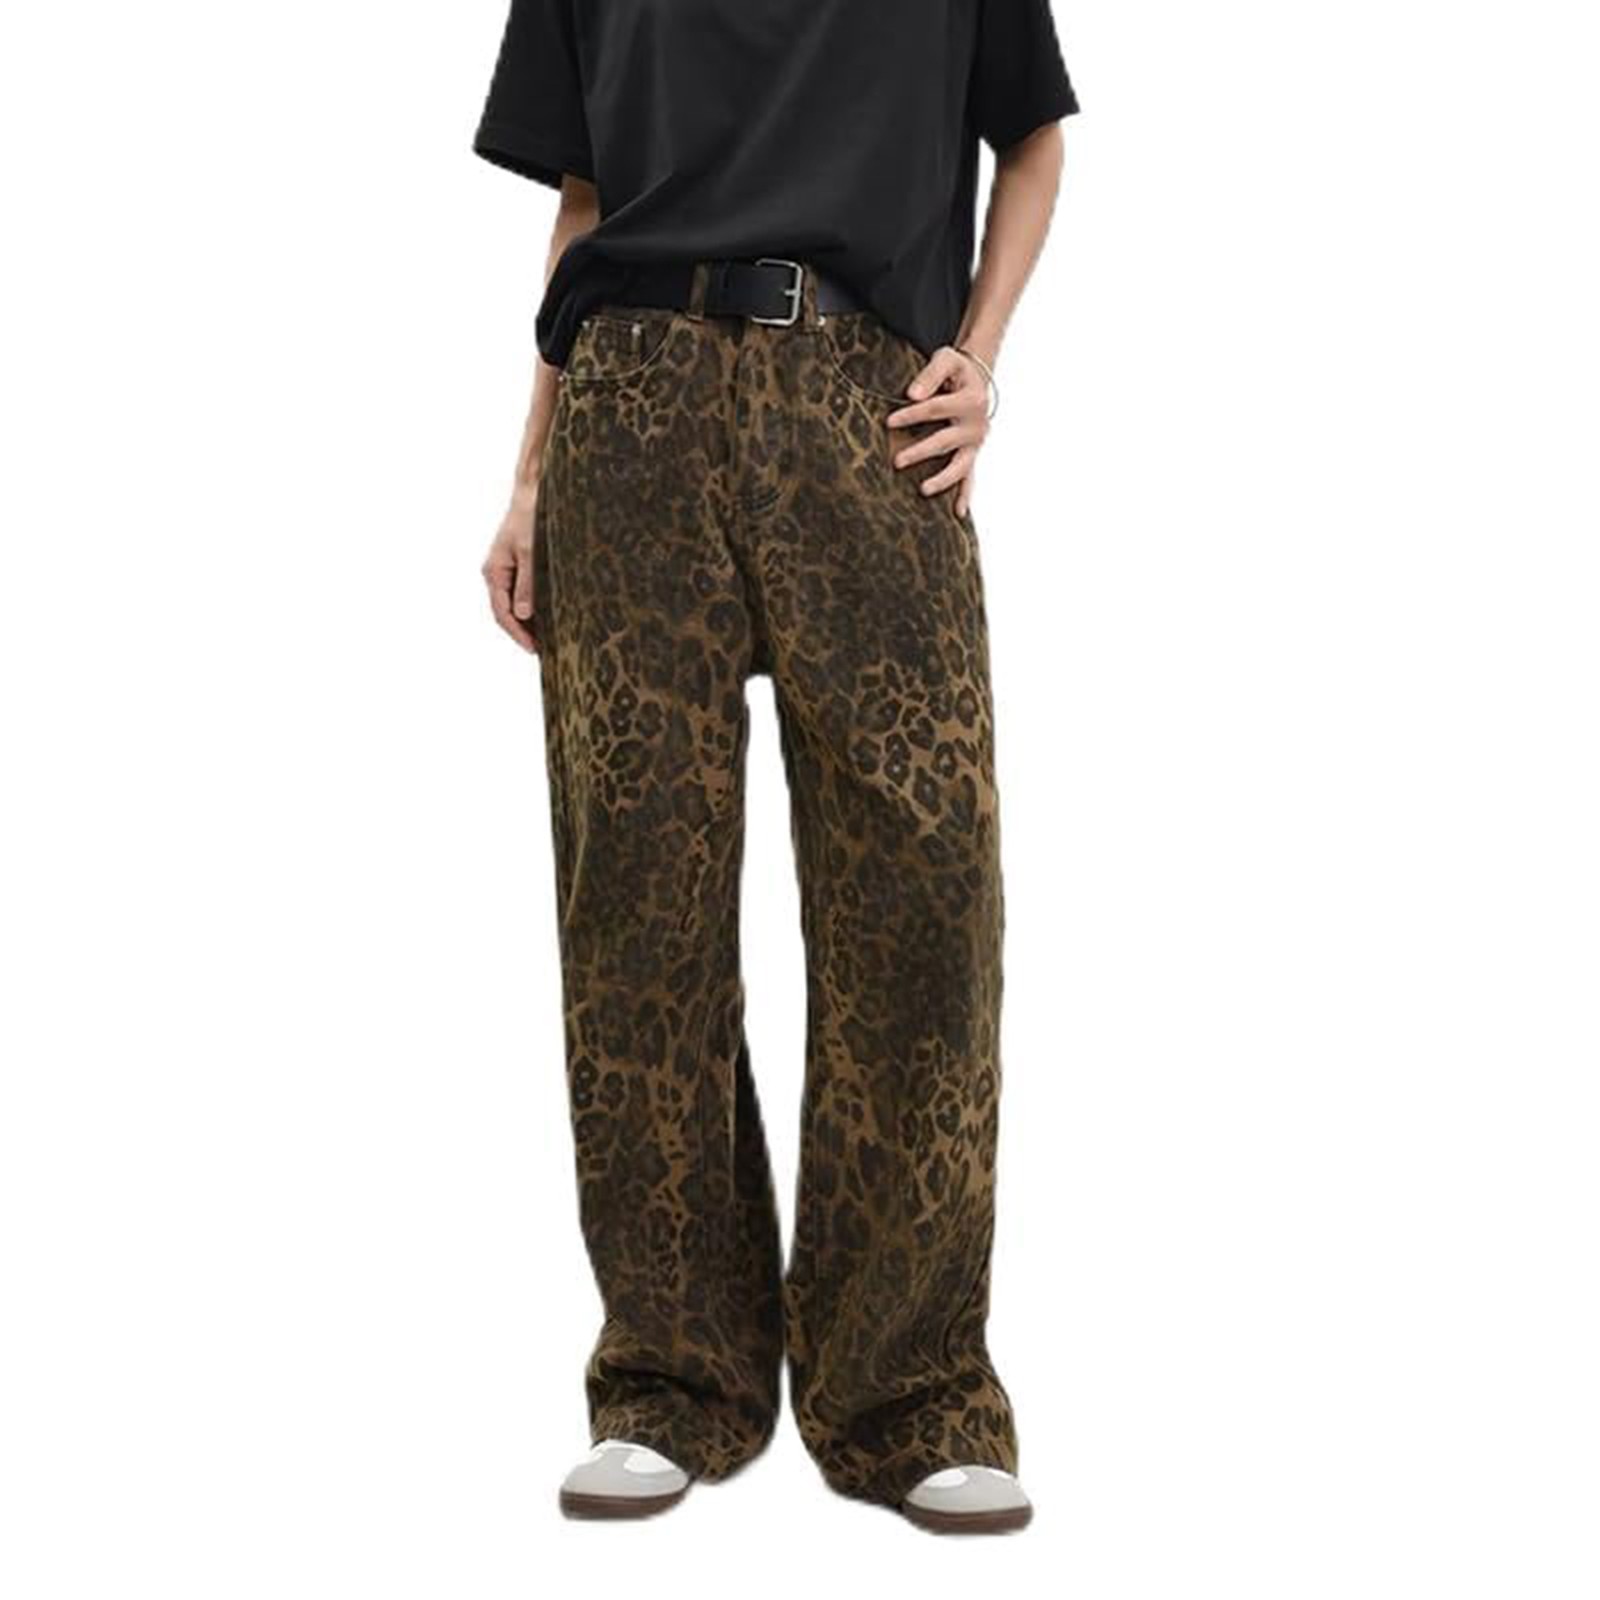 JULMCOMO Leopard Print Jeans for Women High Waist Straight Leg Grunge ...